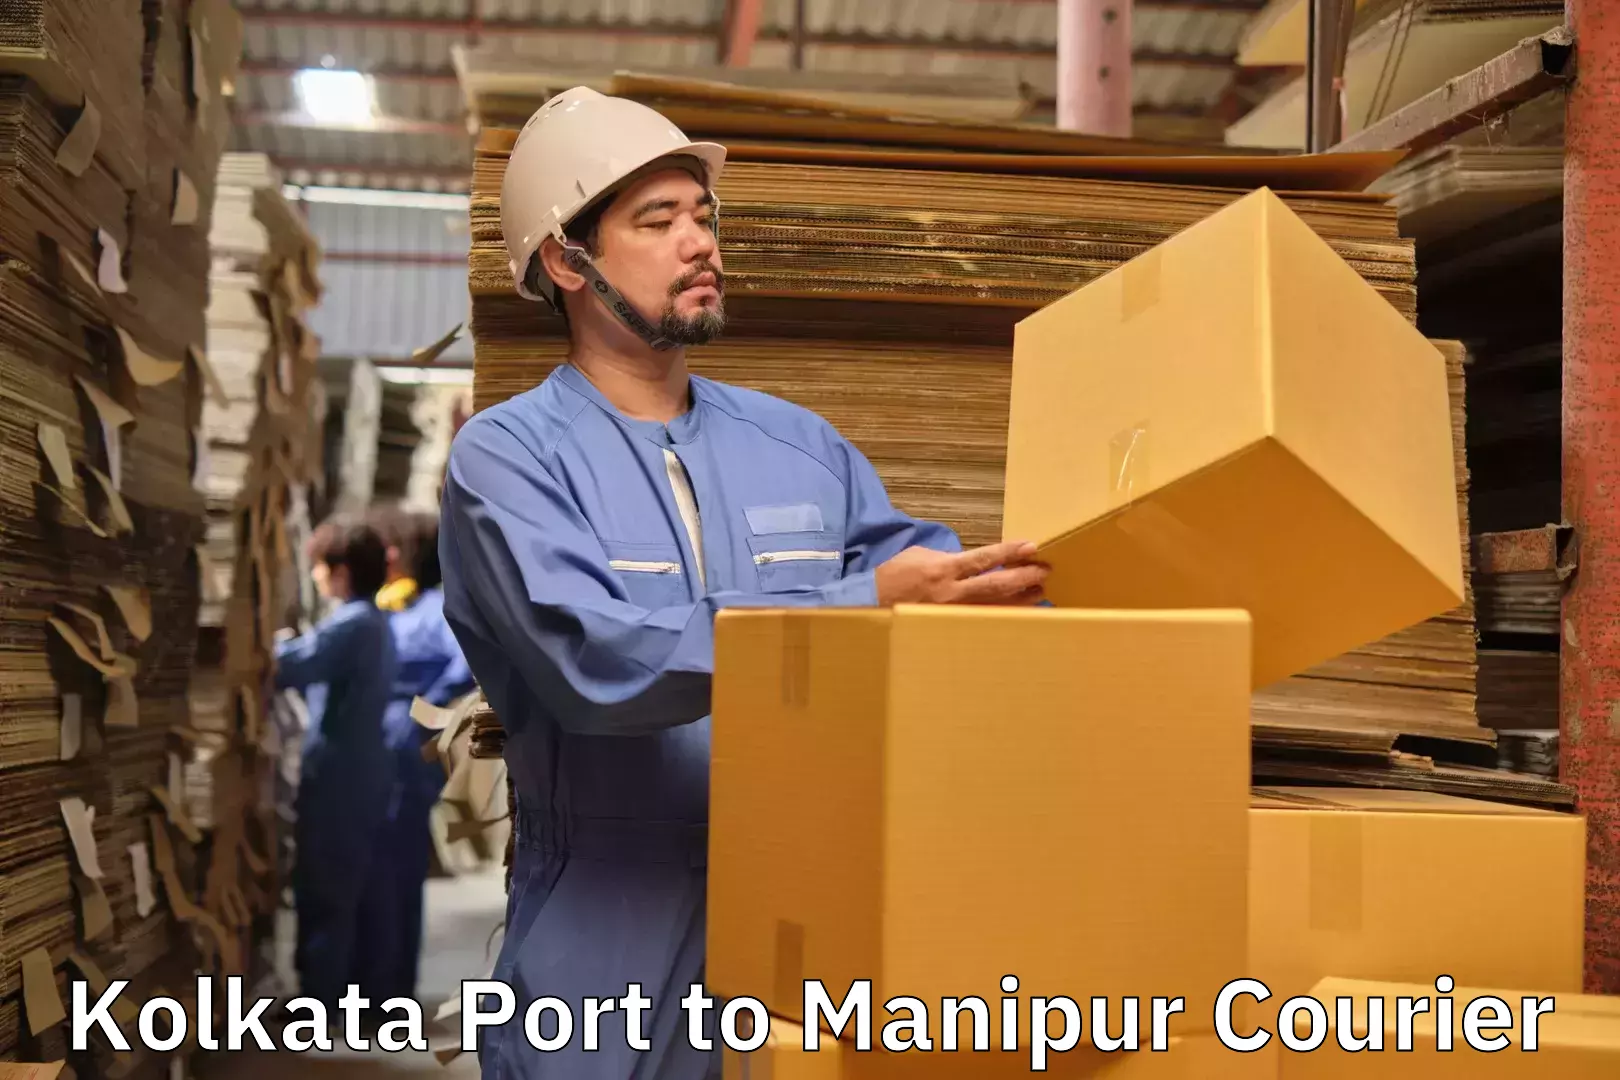 Baggage delivery estimate in Kolkata Port to Manipur